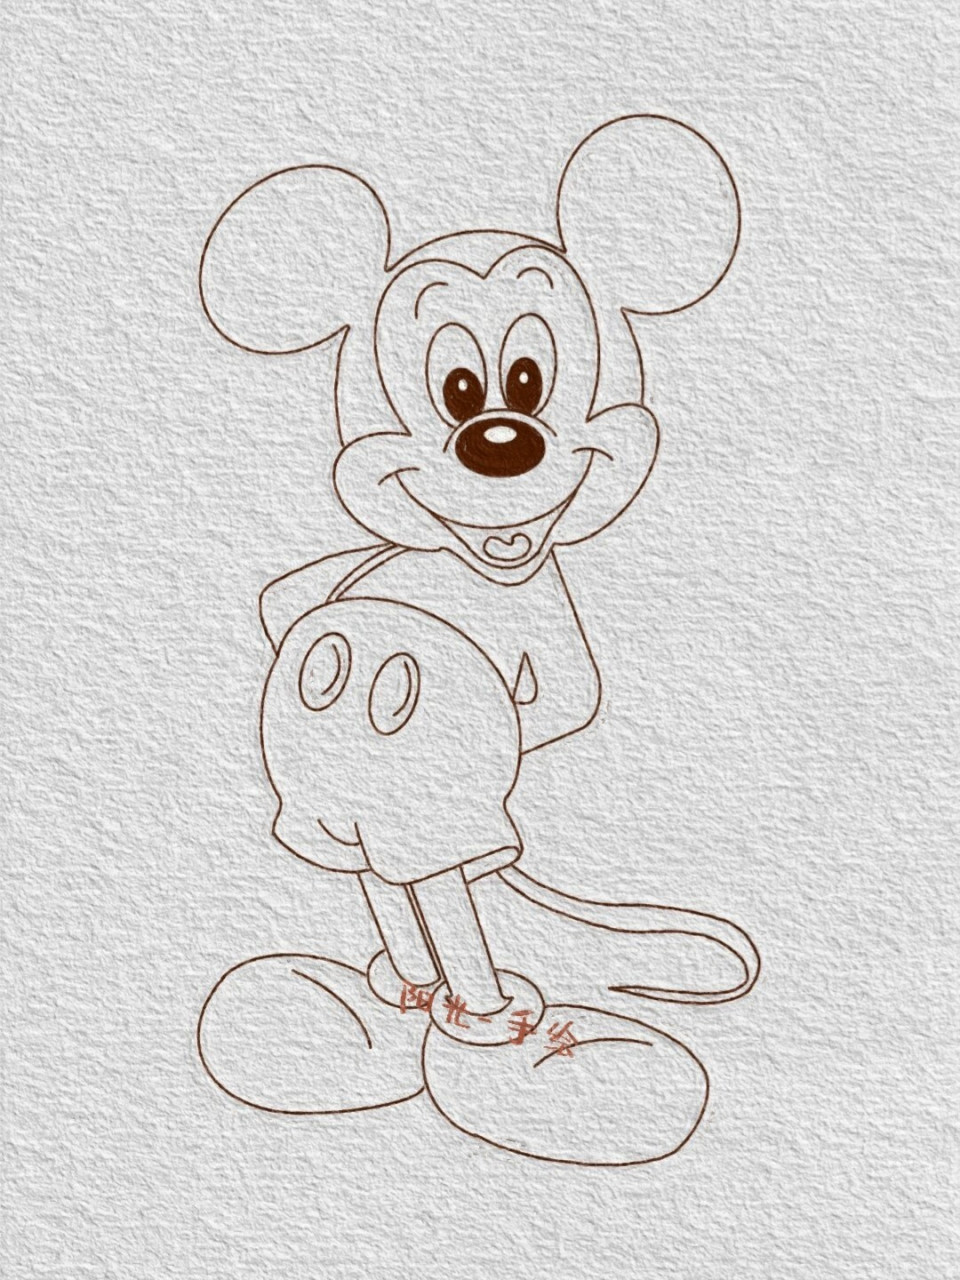 迪士尼人物米老鼠简笔画教程(100/34) 比起打击,我更喜欢鼓励,因为